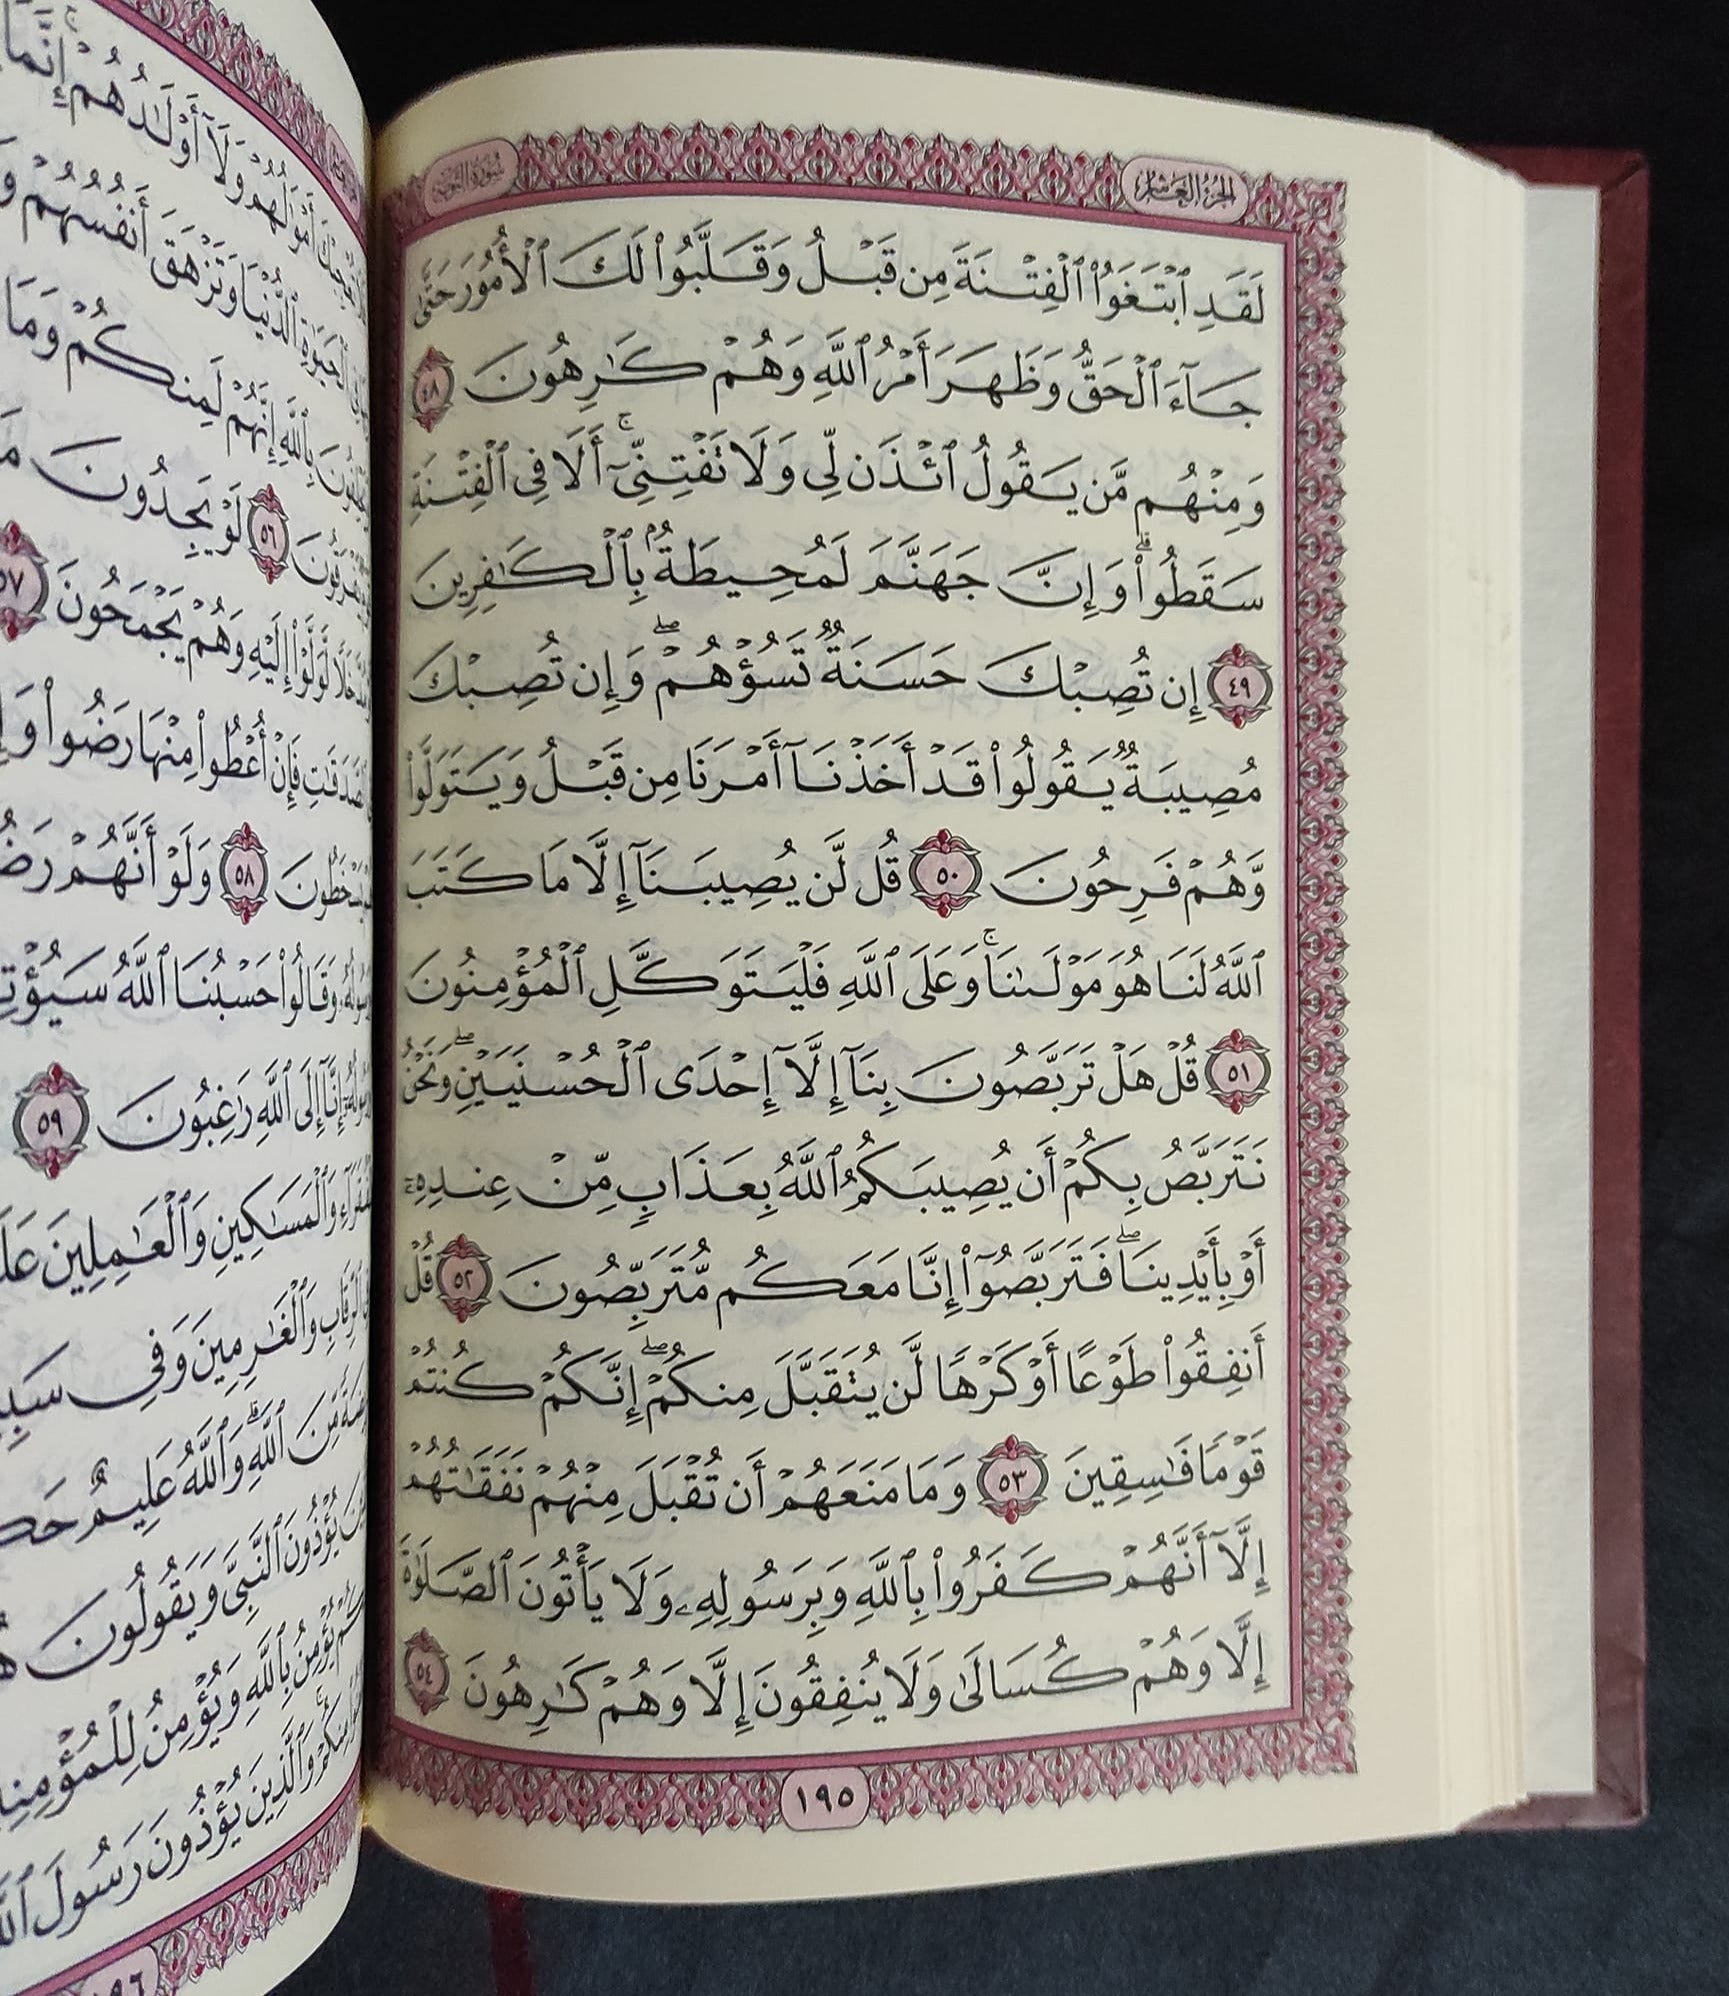 القرآن الكريم بالرسم العثماني كتب إسلامية دار التقوى للنشر والتوزيع